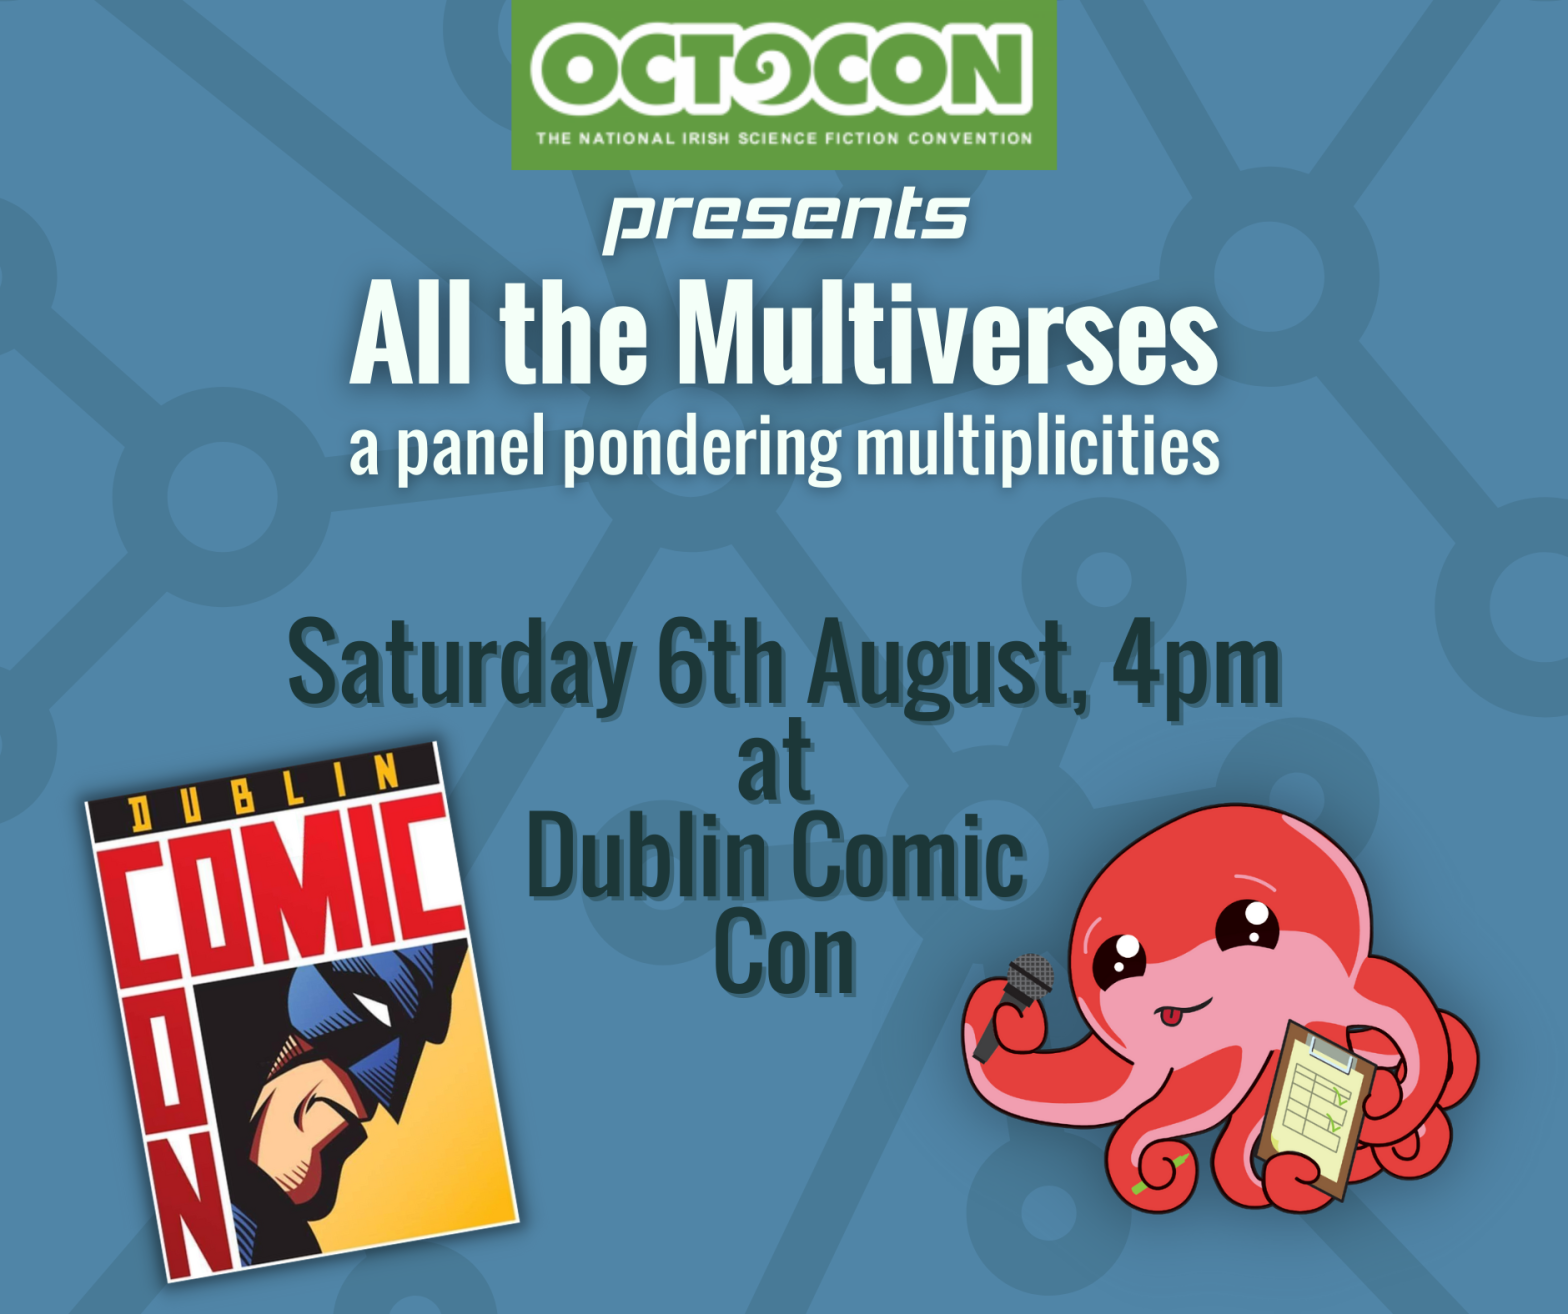 Octocon Presents at Dublin Comic Con – All the Multiverses